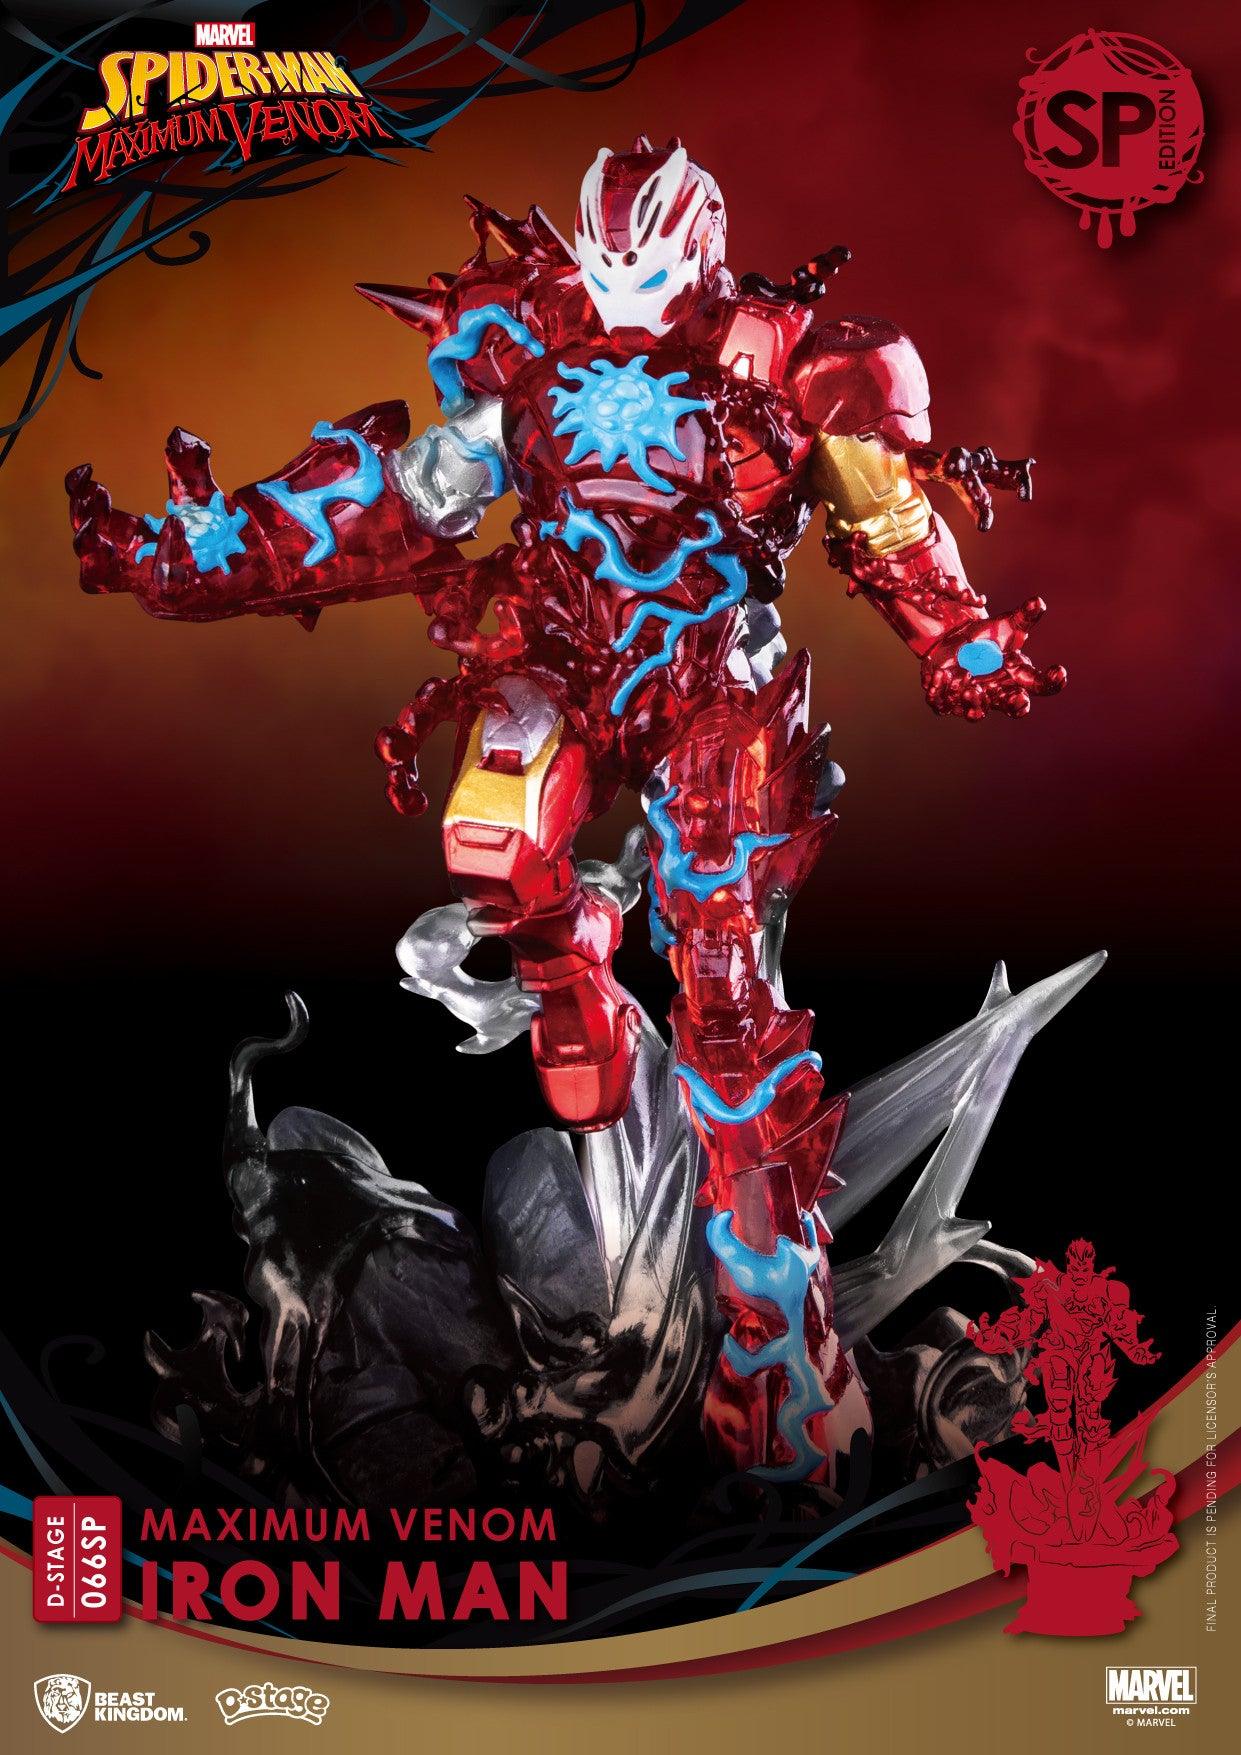 VR-93323 Beast Kingdom D Stage Maximum Venom Iron Man Special Edition - Beast Kingdom - Titan Pop Culture